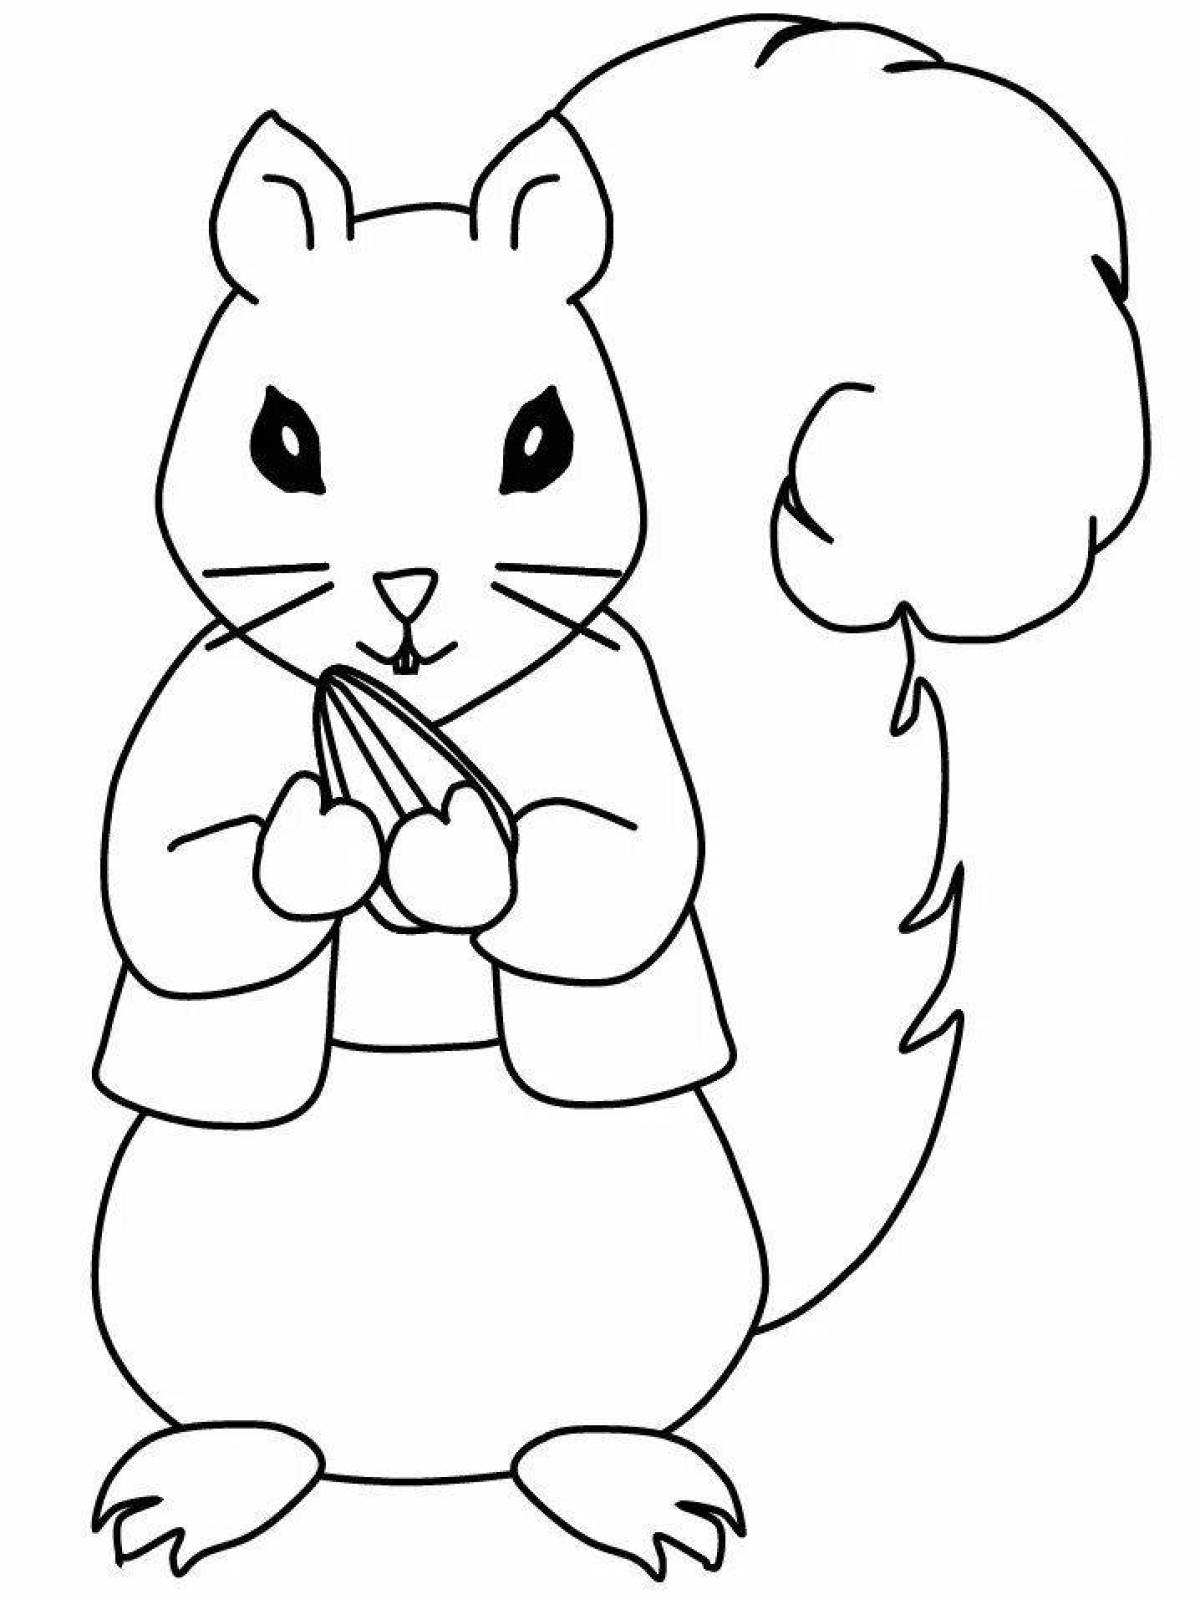 Violent squirrel coloring page